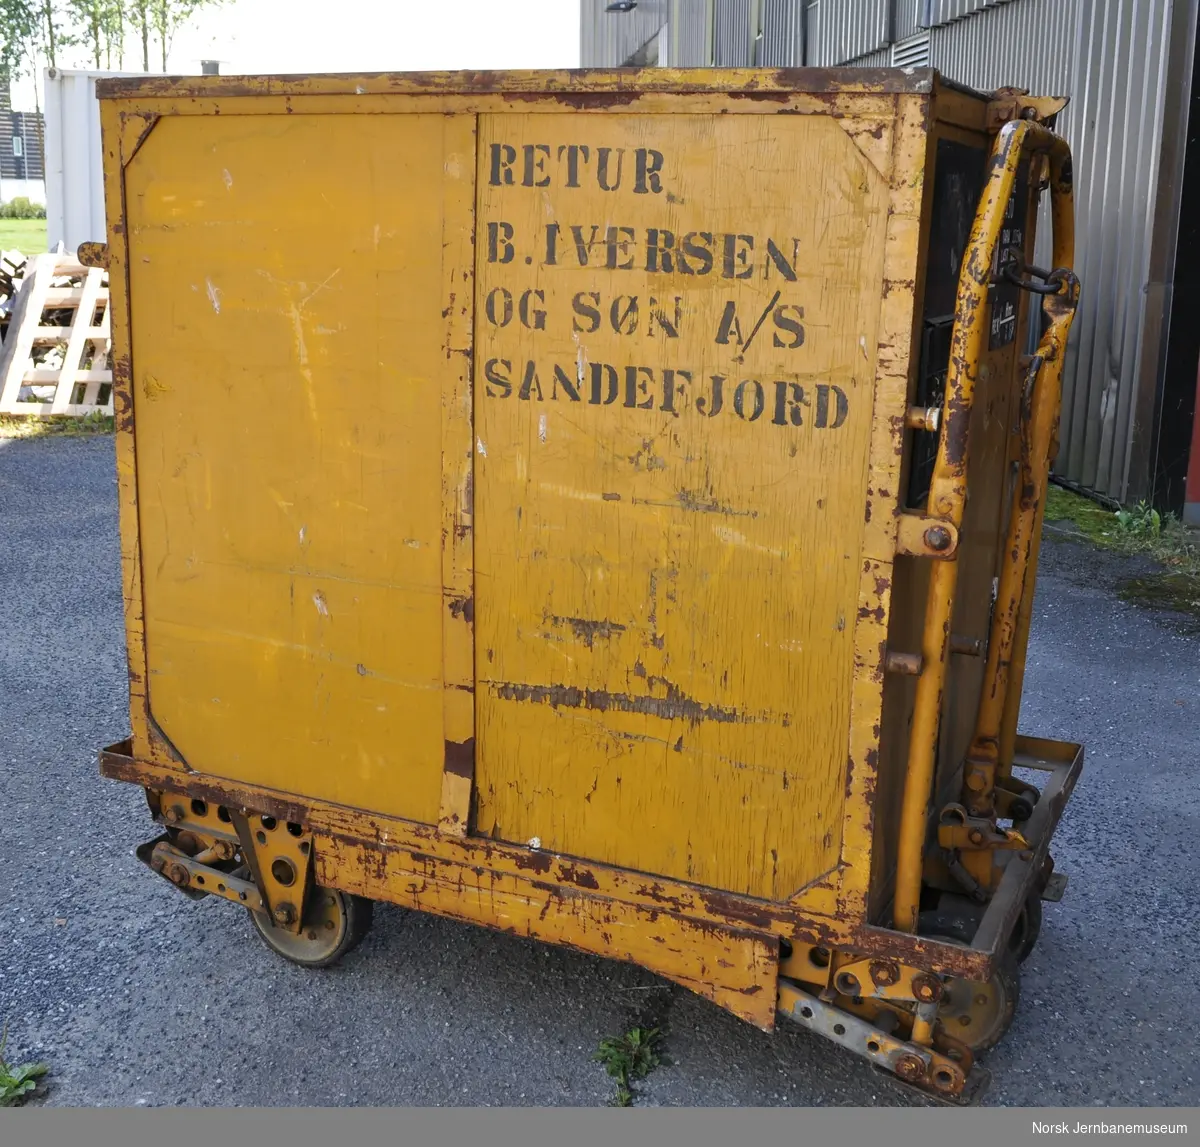 Godsbeholder, NSB A 1040
Vekt 235 kg
Last 1000 kg
Volum 1 m3

Påmalt: Retur B. Iversen og Søn A/S, Sandefjord